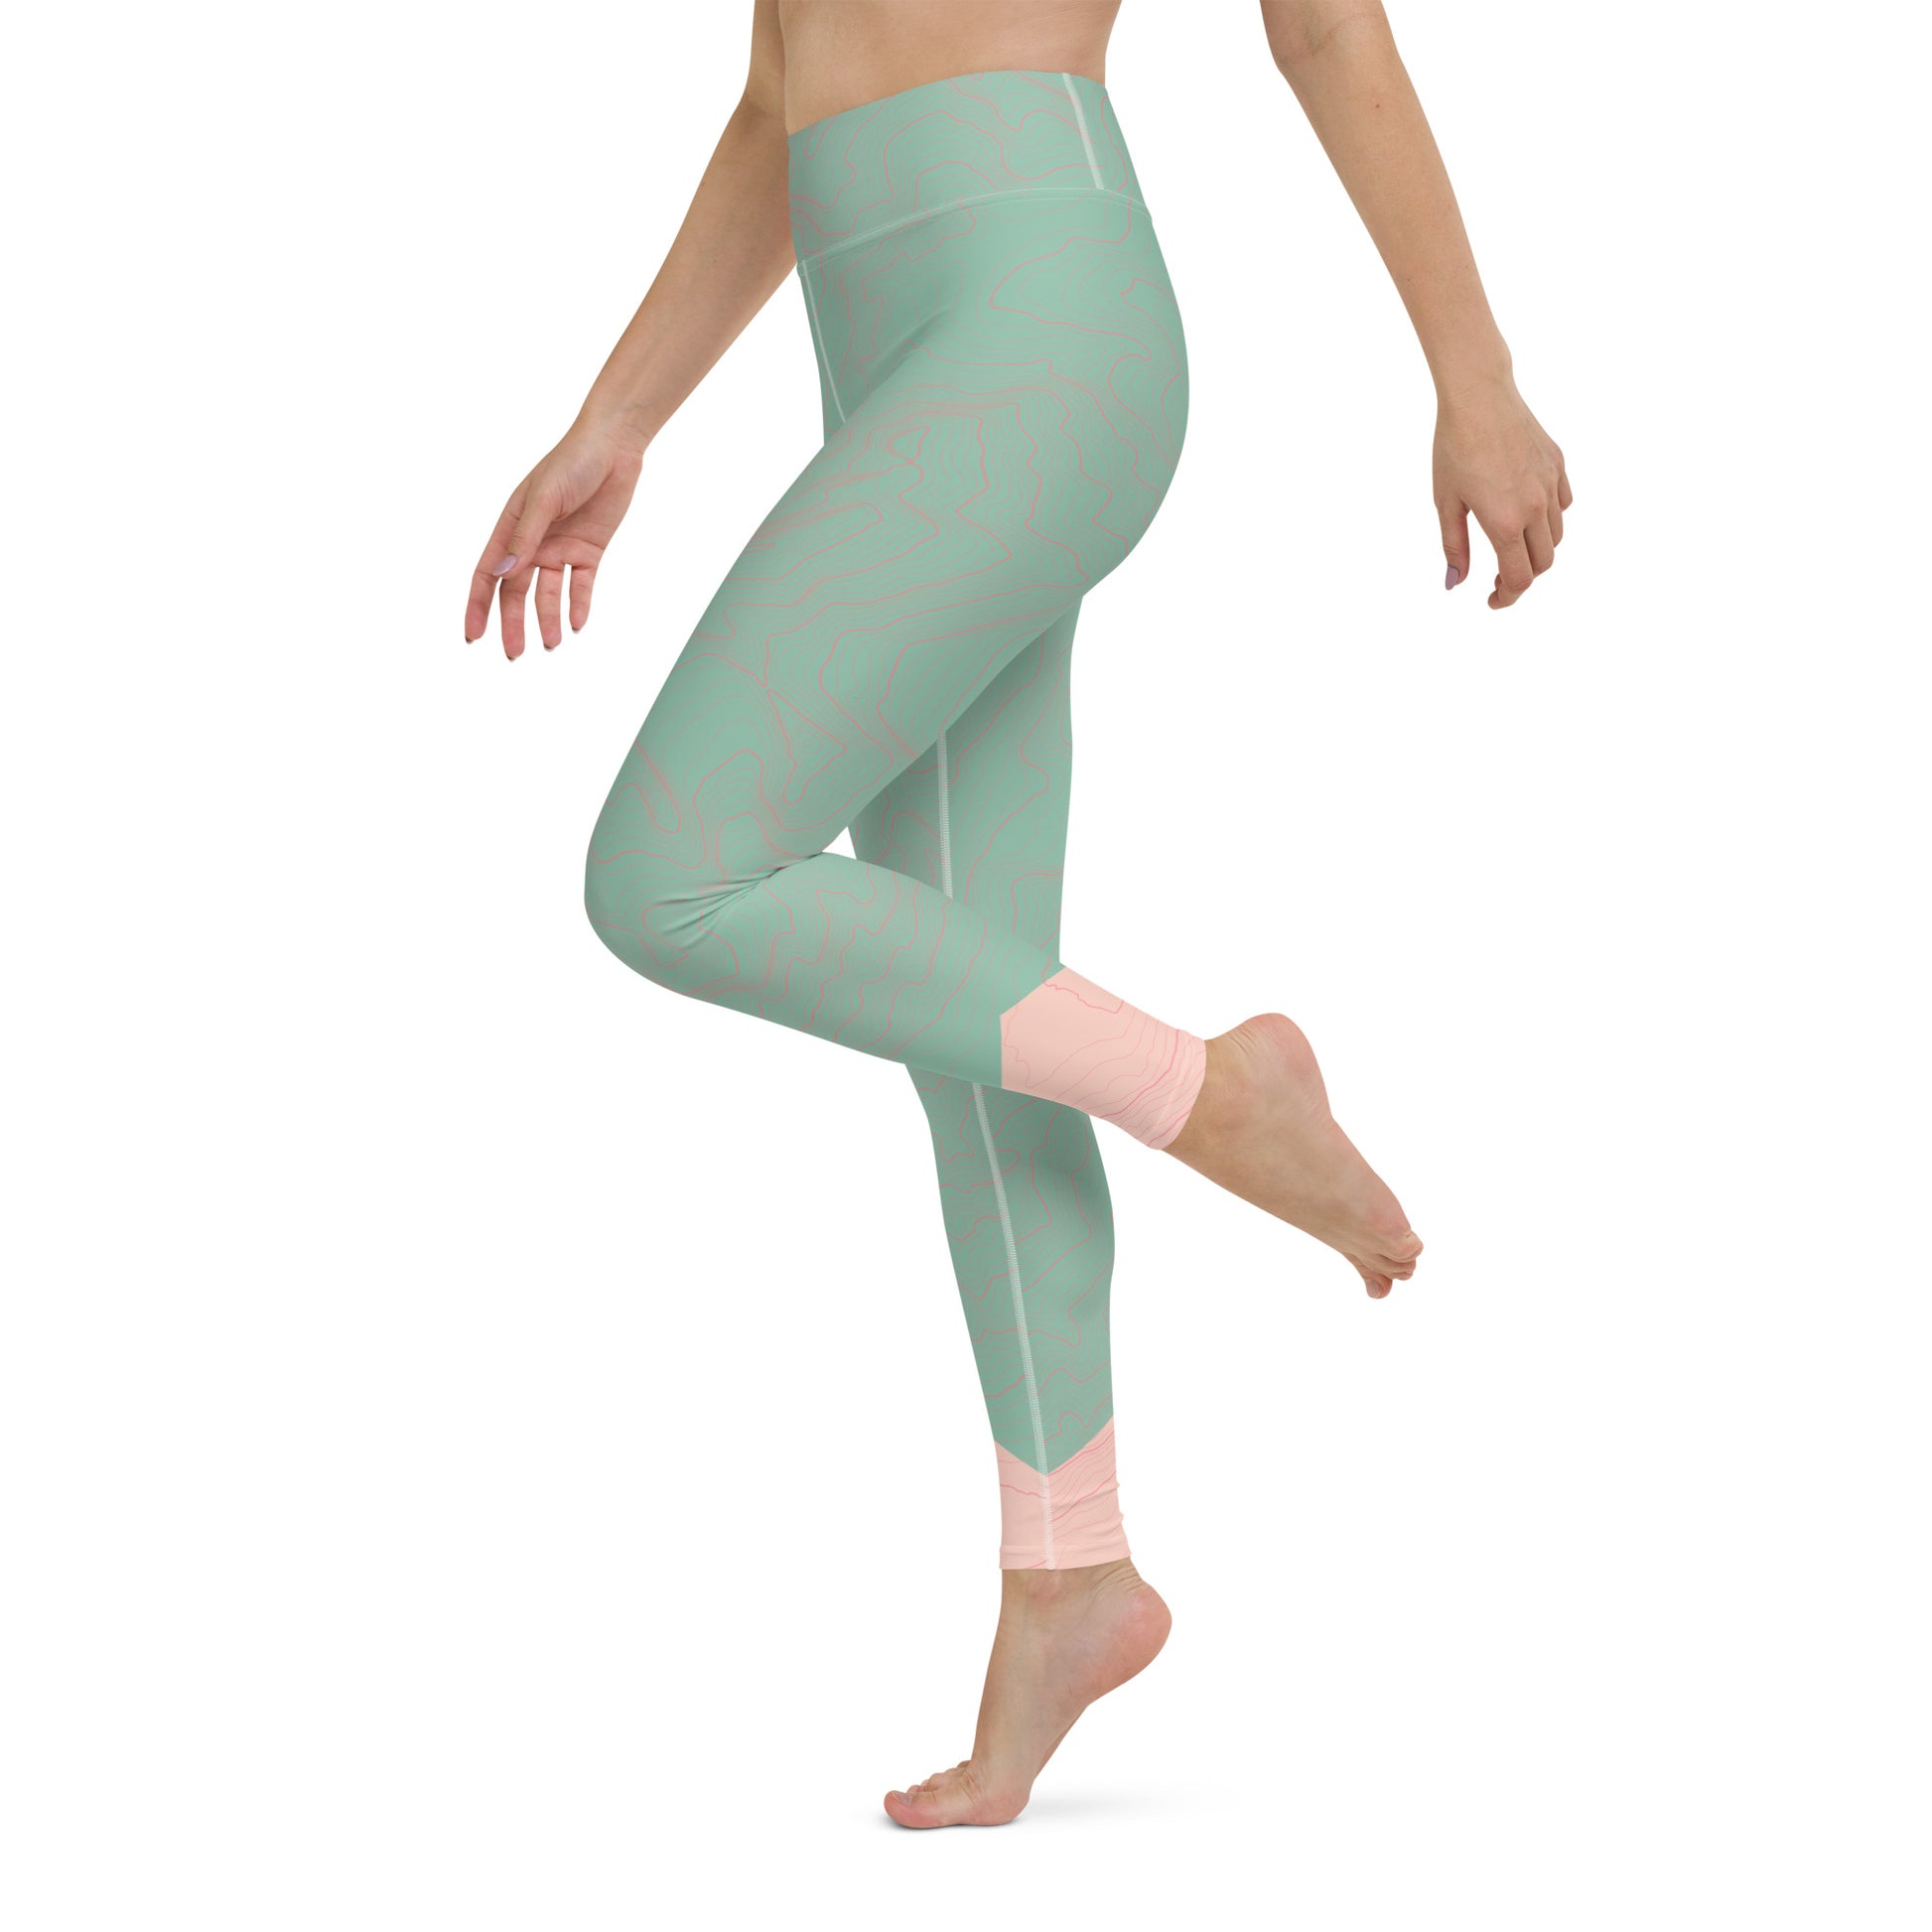 https://store.thetrek.co/cdn/shop/products/all-over-print-yoga-leggings-white-left-6376b2d86e5b8.jpg?v=1670883424&width=1946